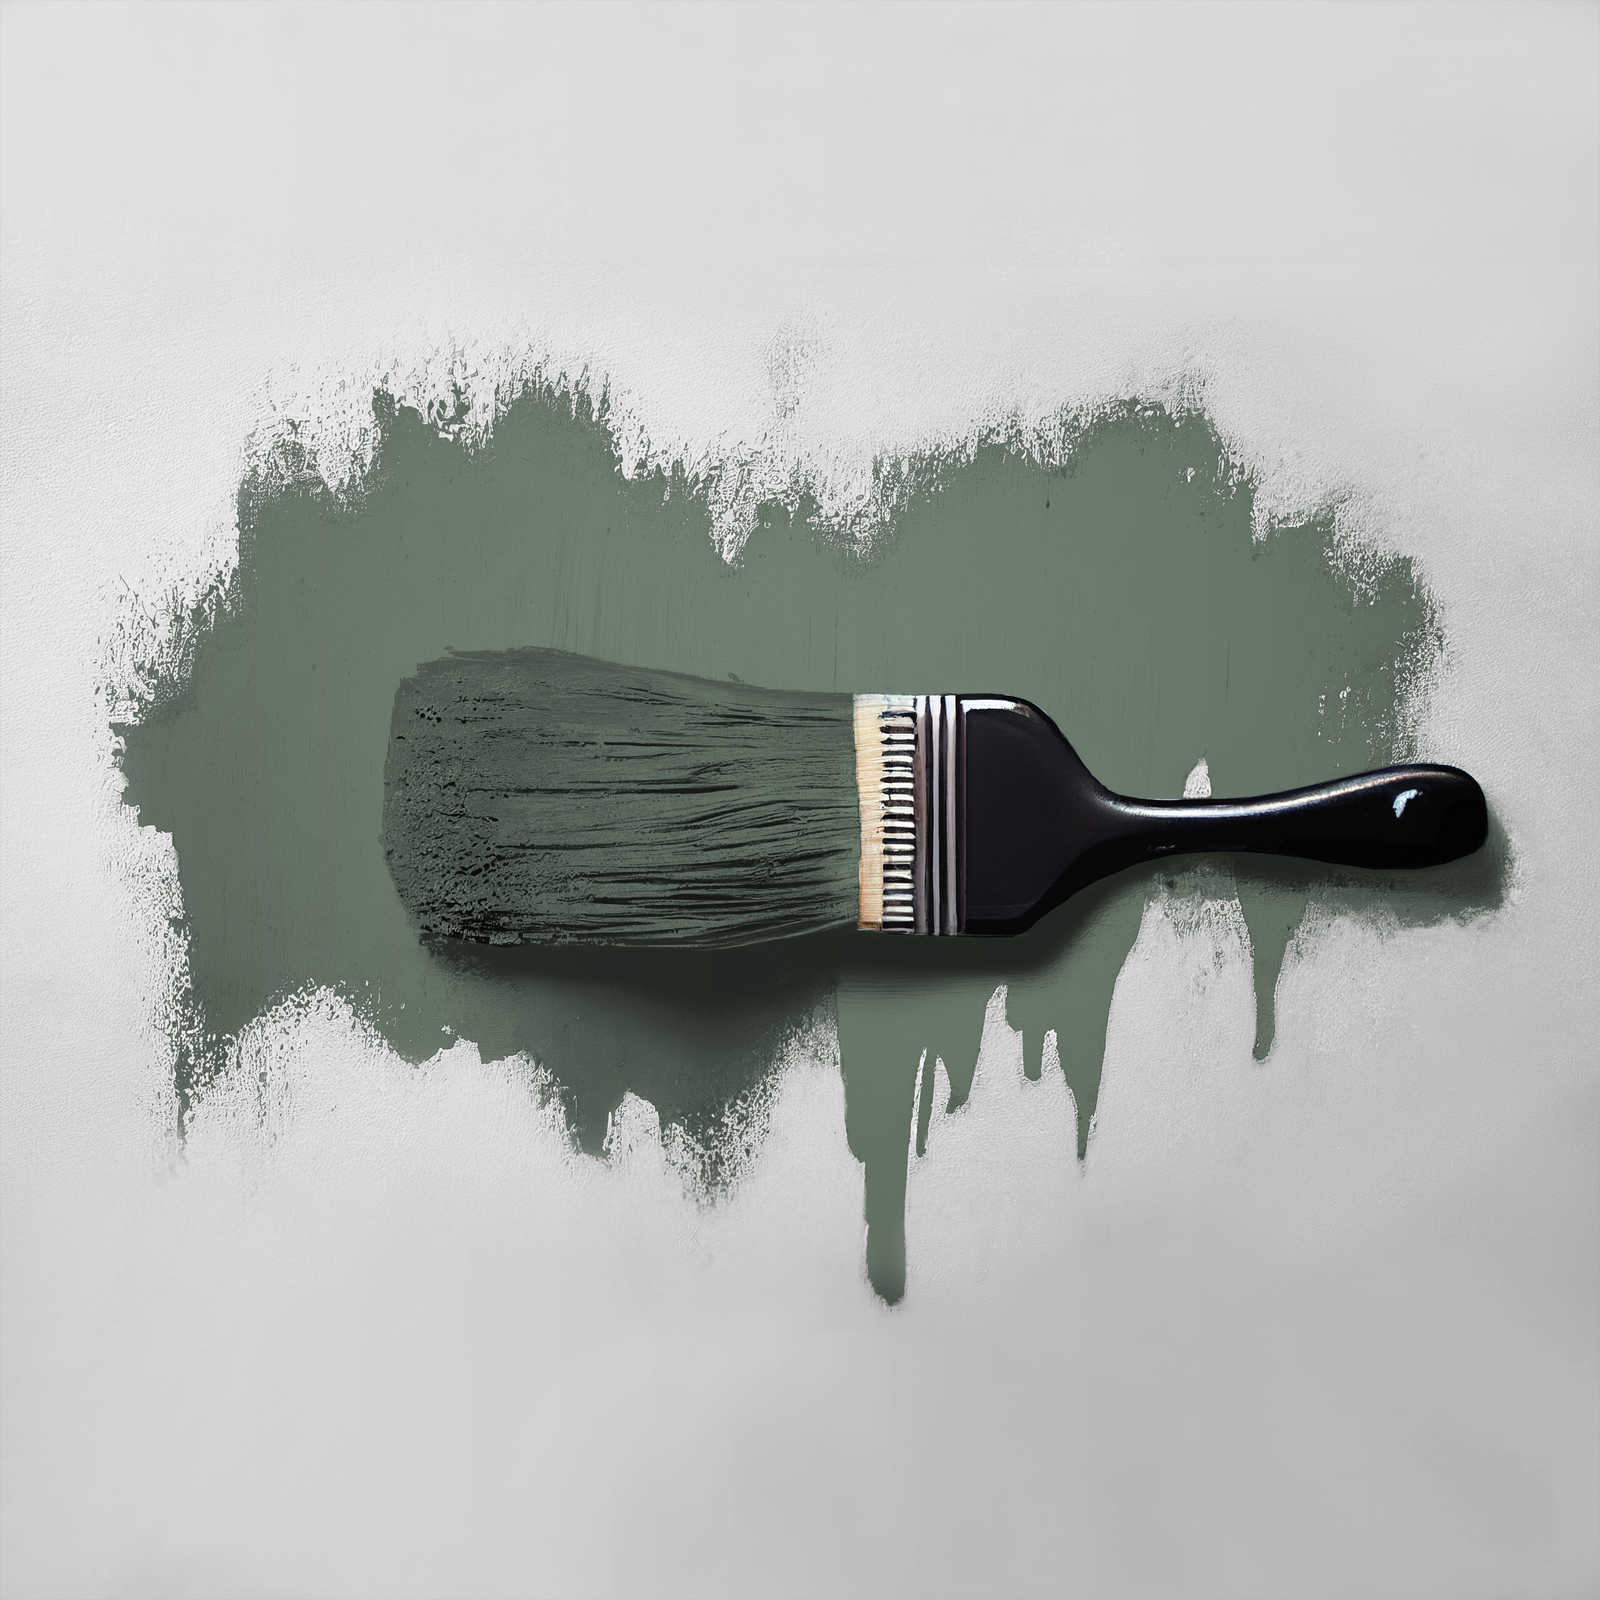             Pittura murale TCK4005 »Ritzy Rosemary« in verde domestico – 2,5 litri
        